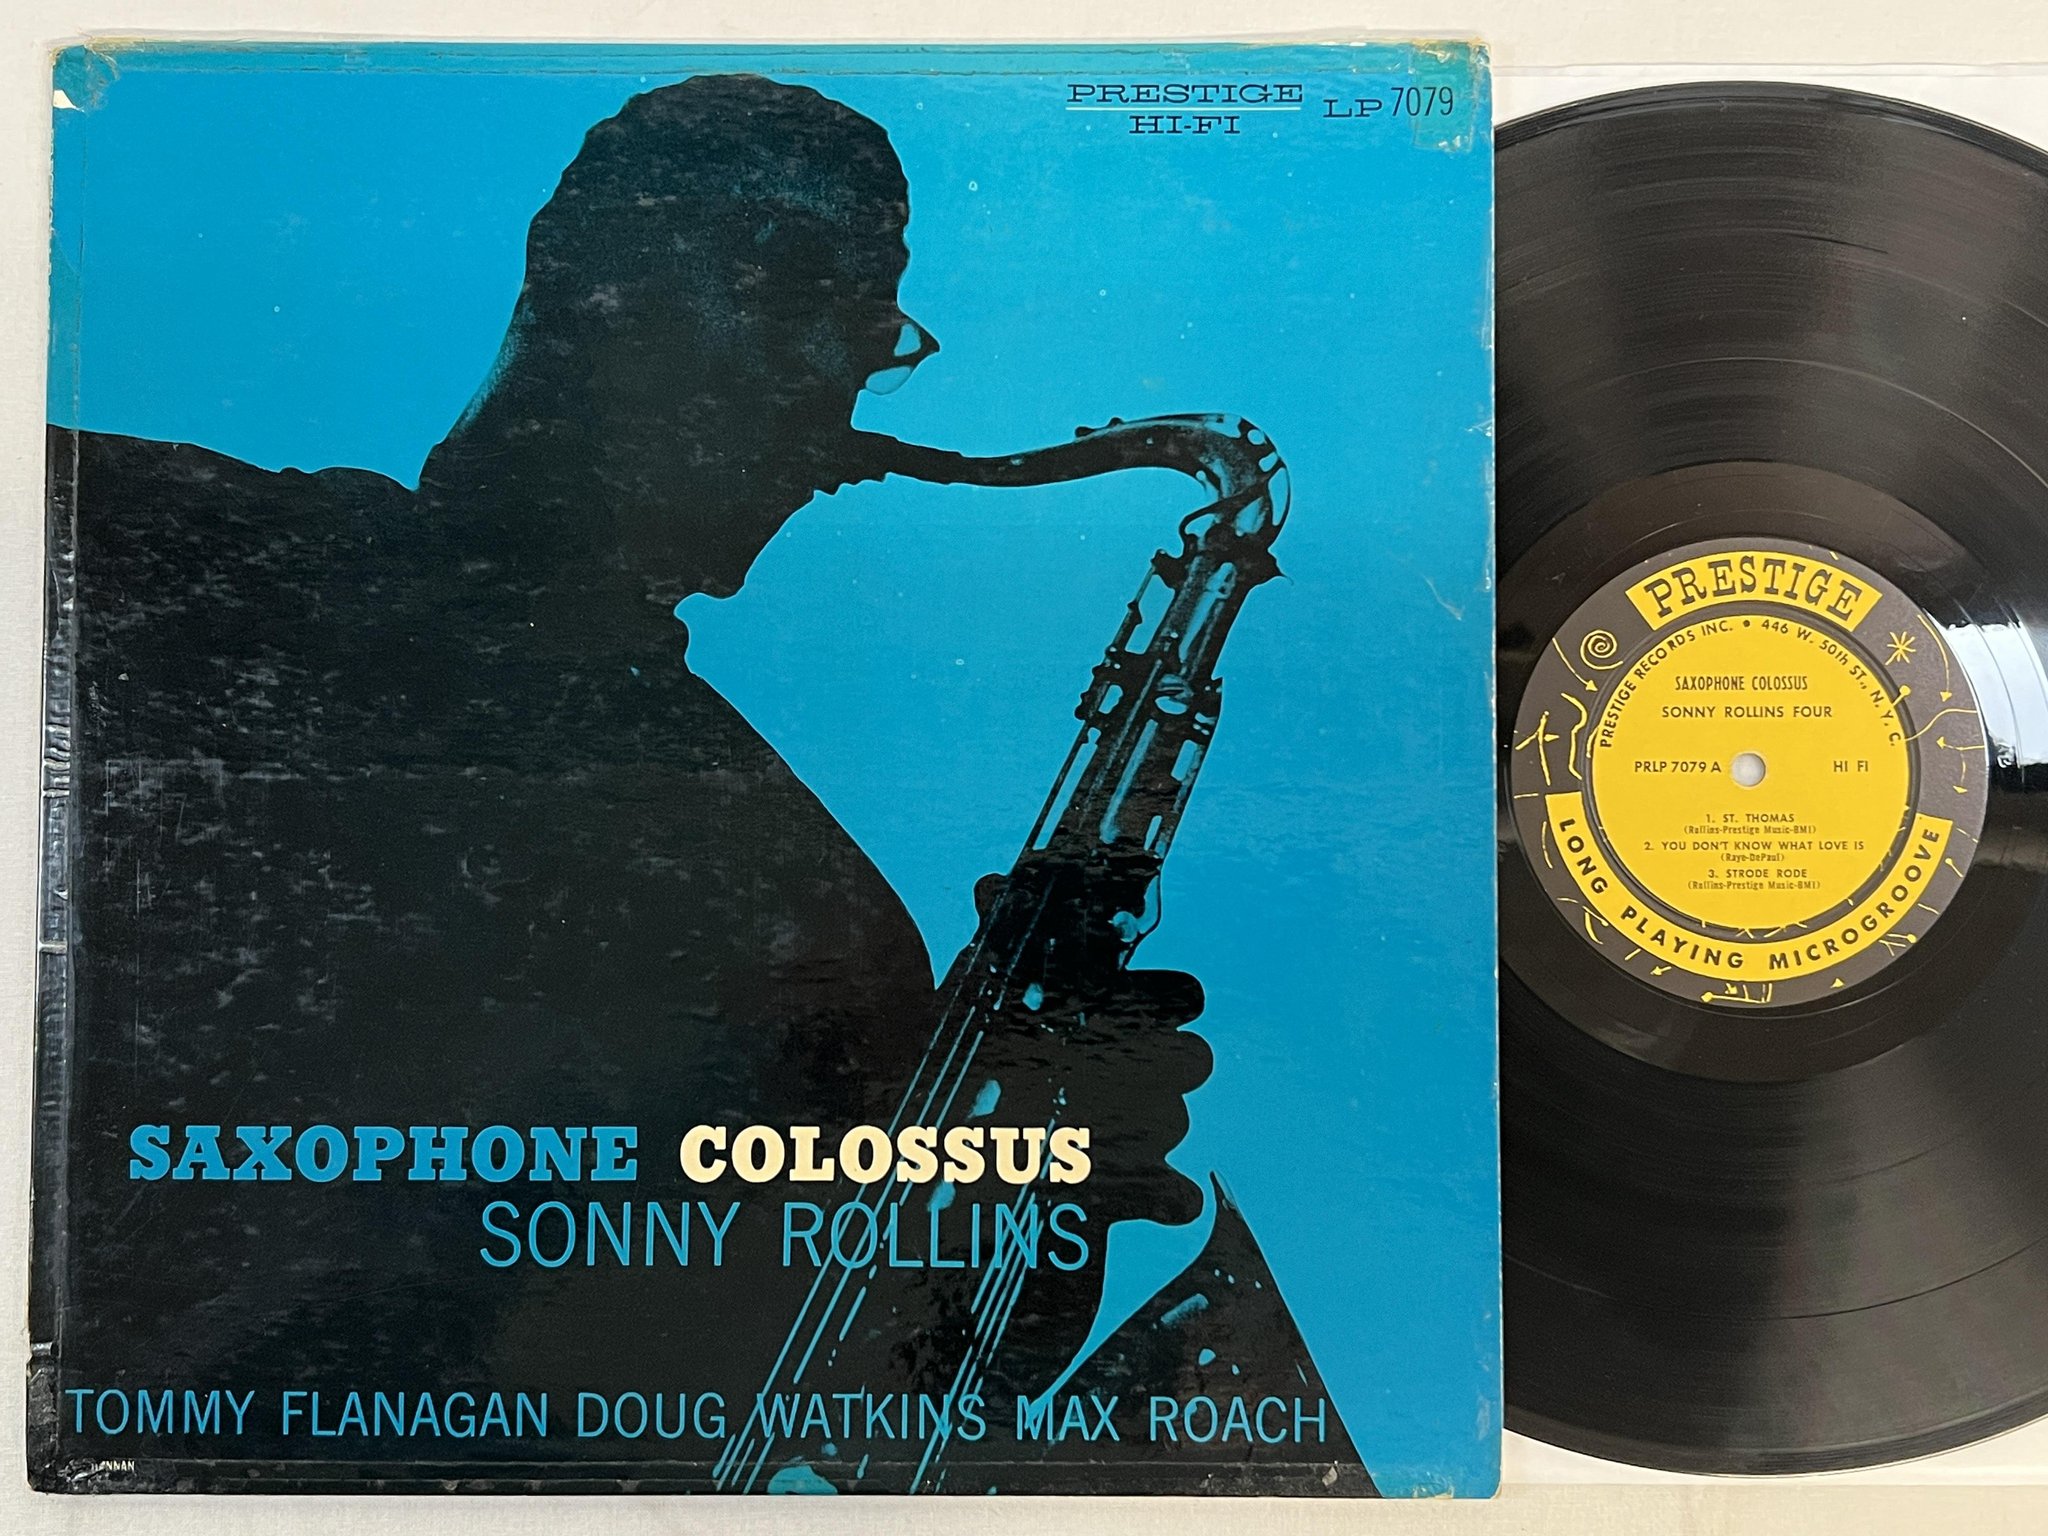 Omslagsbild för skivan SONNY ROLLINS FOUR saxophone colossus LP -57 US PRESTIGE PRLP 7079 ** R A R E **